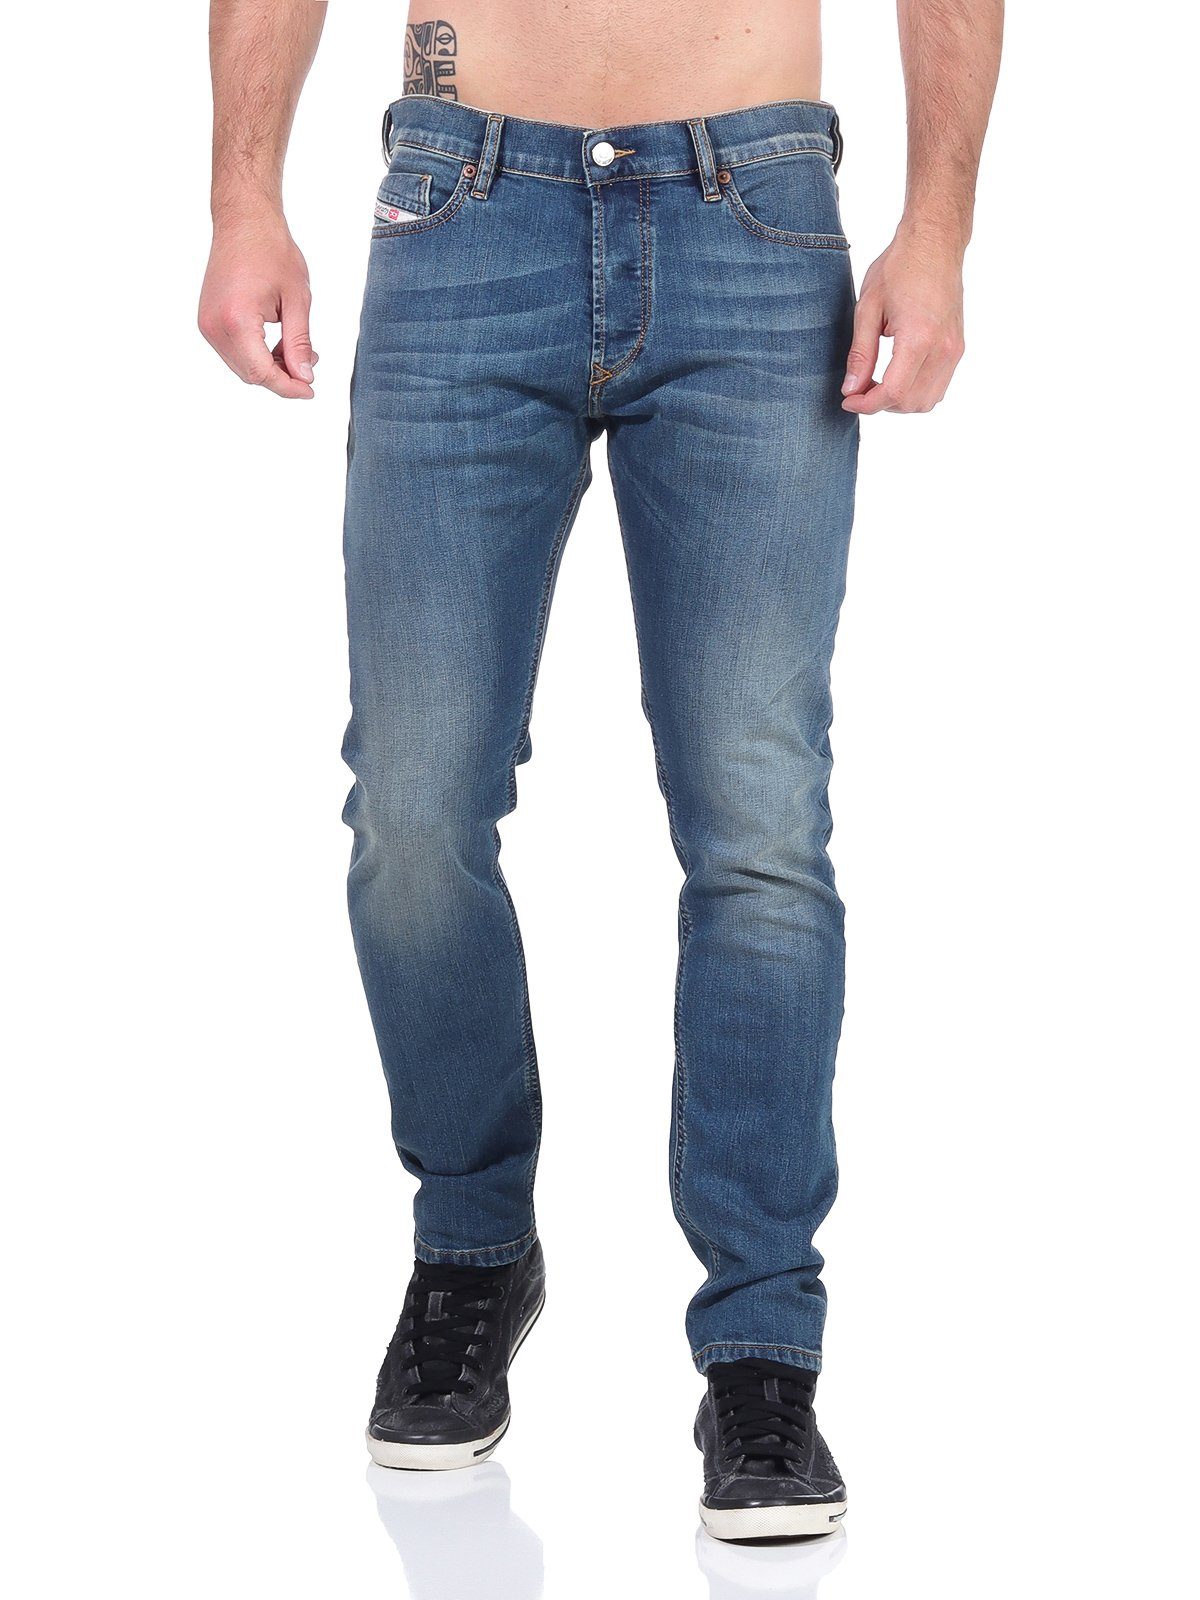 Röhrenjeans, 5-Pocket-Style, 083AA Slim-fit-Jeans Herren Tepphar-X Diesel Used-Look Stretch, Blau,